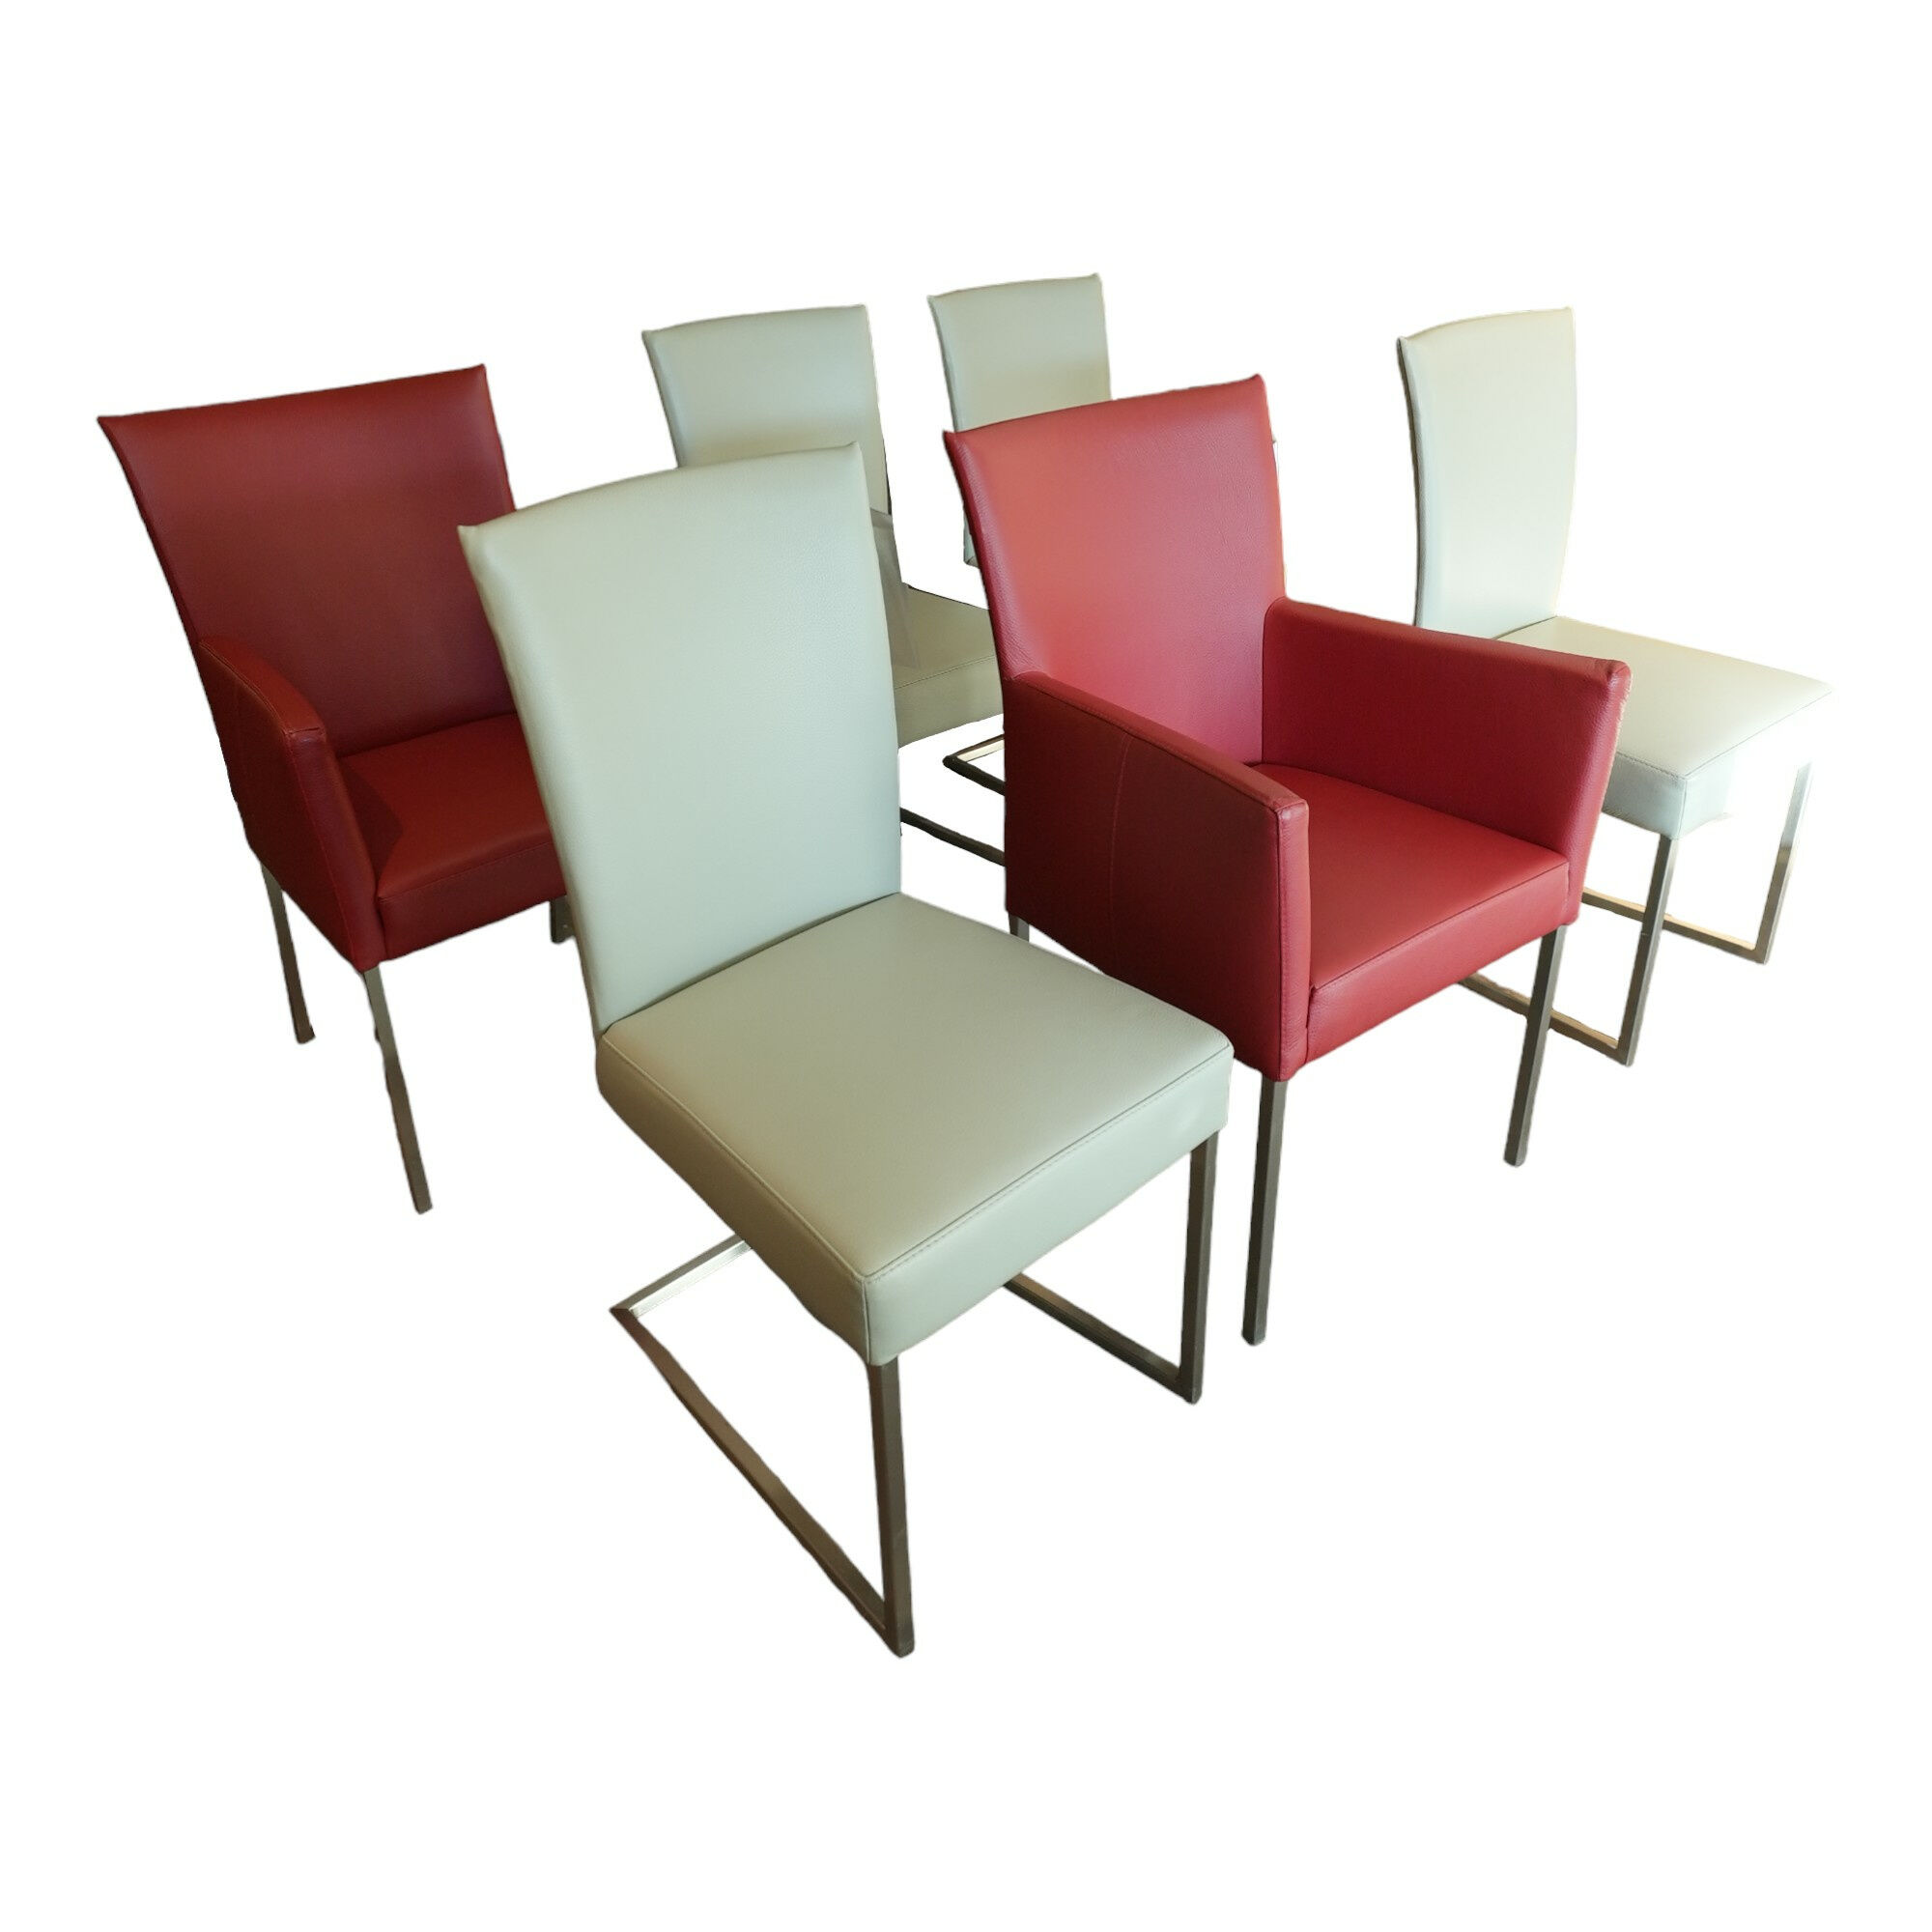 Stuhlgruppe Nova Stuhlwerk Leder Tendens Paprika Rot Und Kiesel Grau Gestell Edelstahl Quadratisch